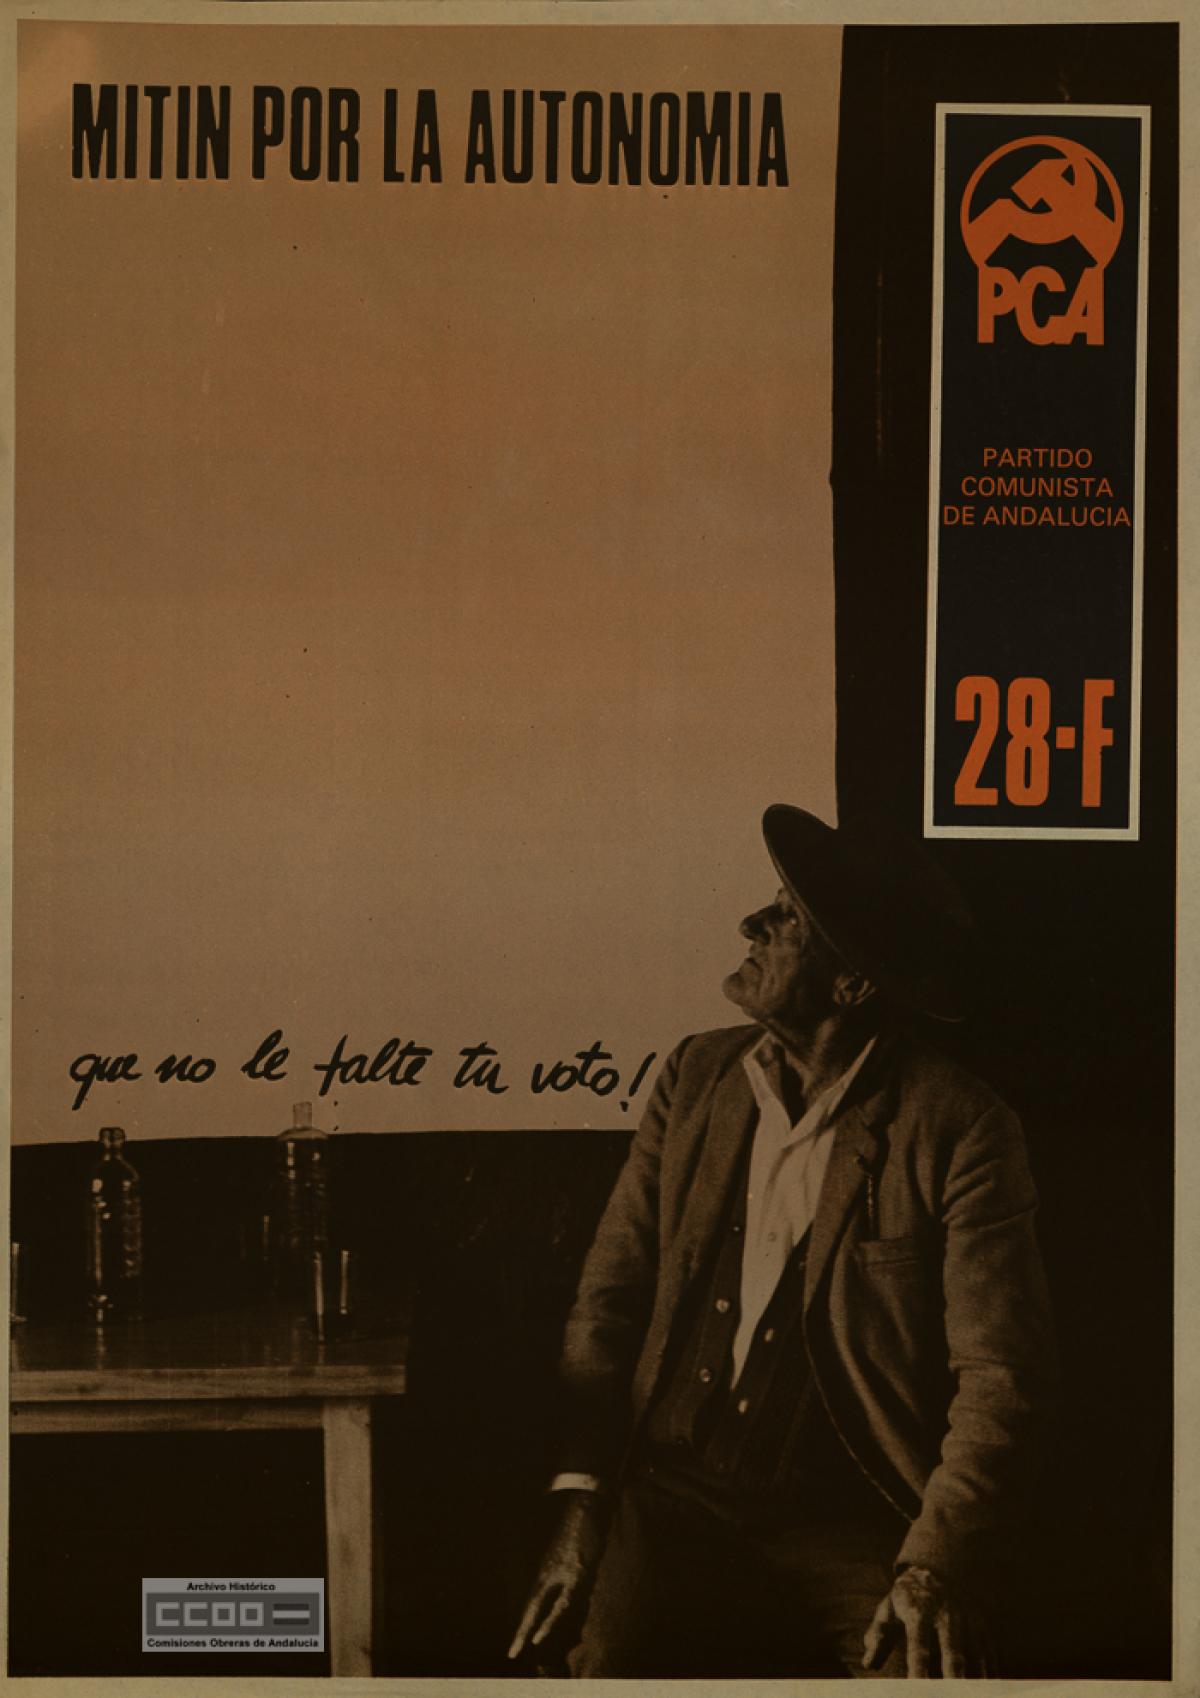 Cartel "ventana" del PCA de la campaa por el S en el referndum del 28F, 1980